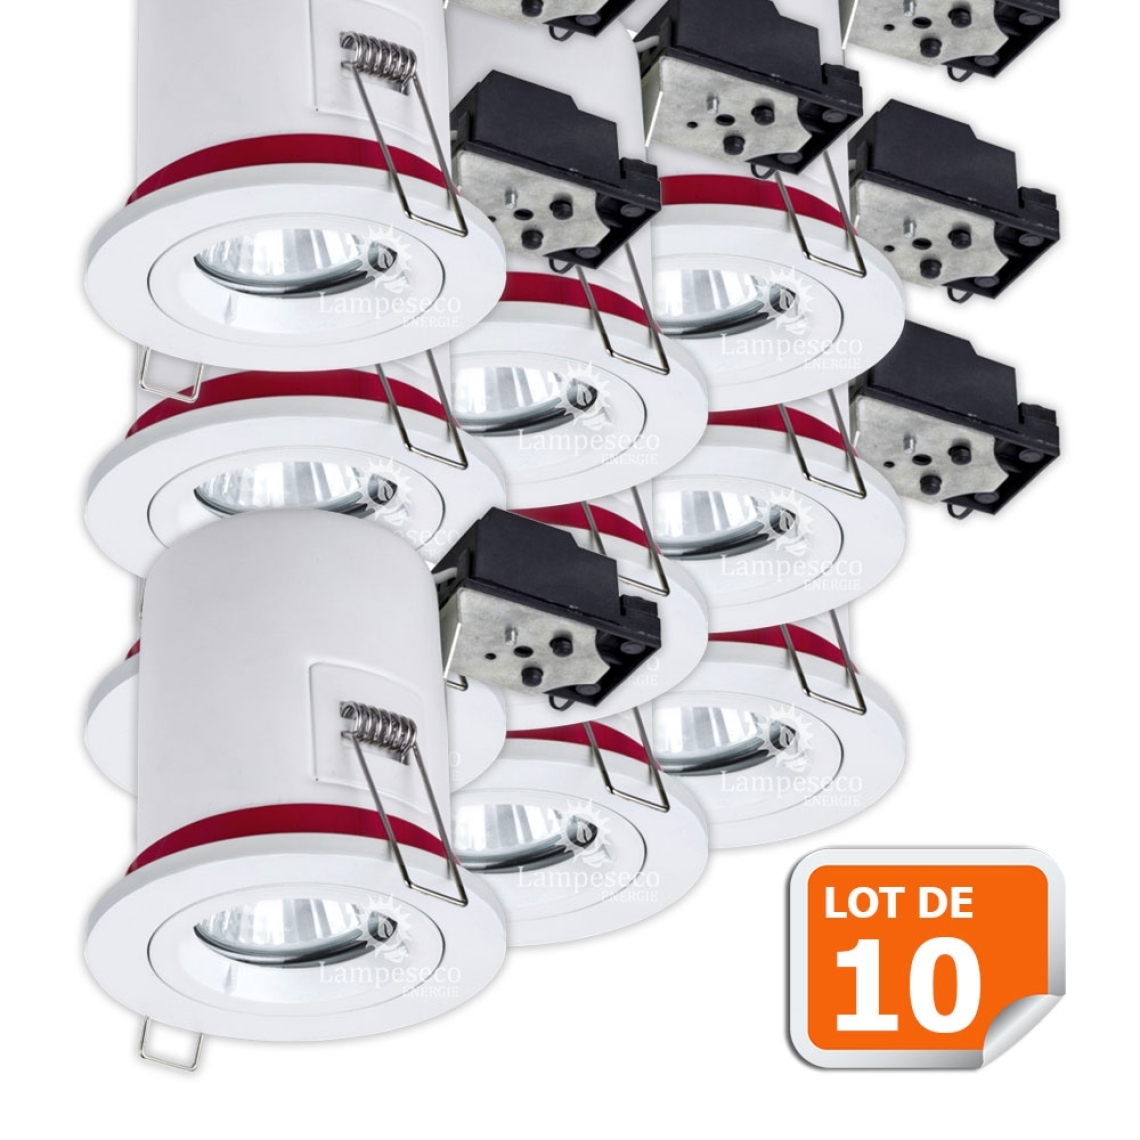 Lampesecoenergie - Lot de 10 Spot BBC Orientable diametre 100mm avec douille GU10 automatique ref. 802 - Moulures et goulottes